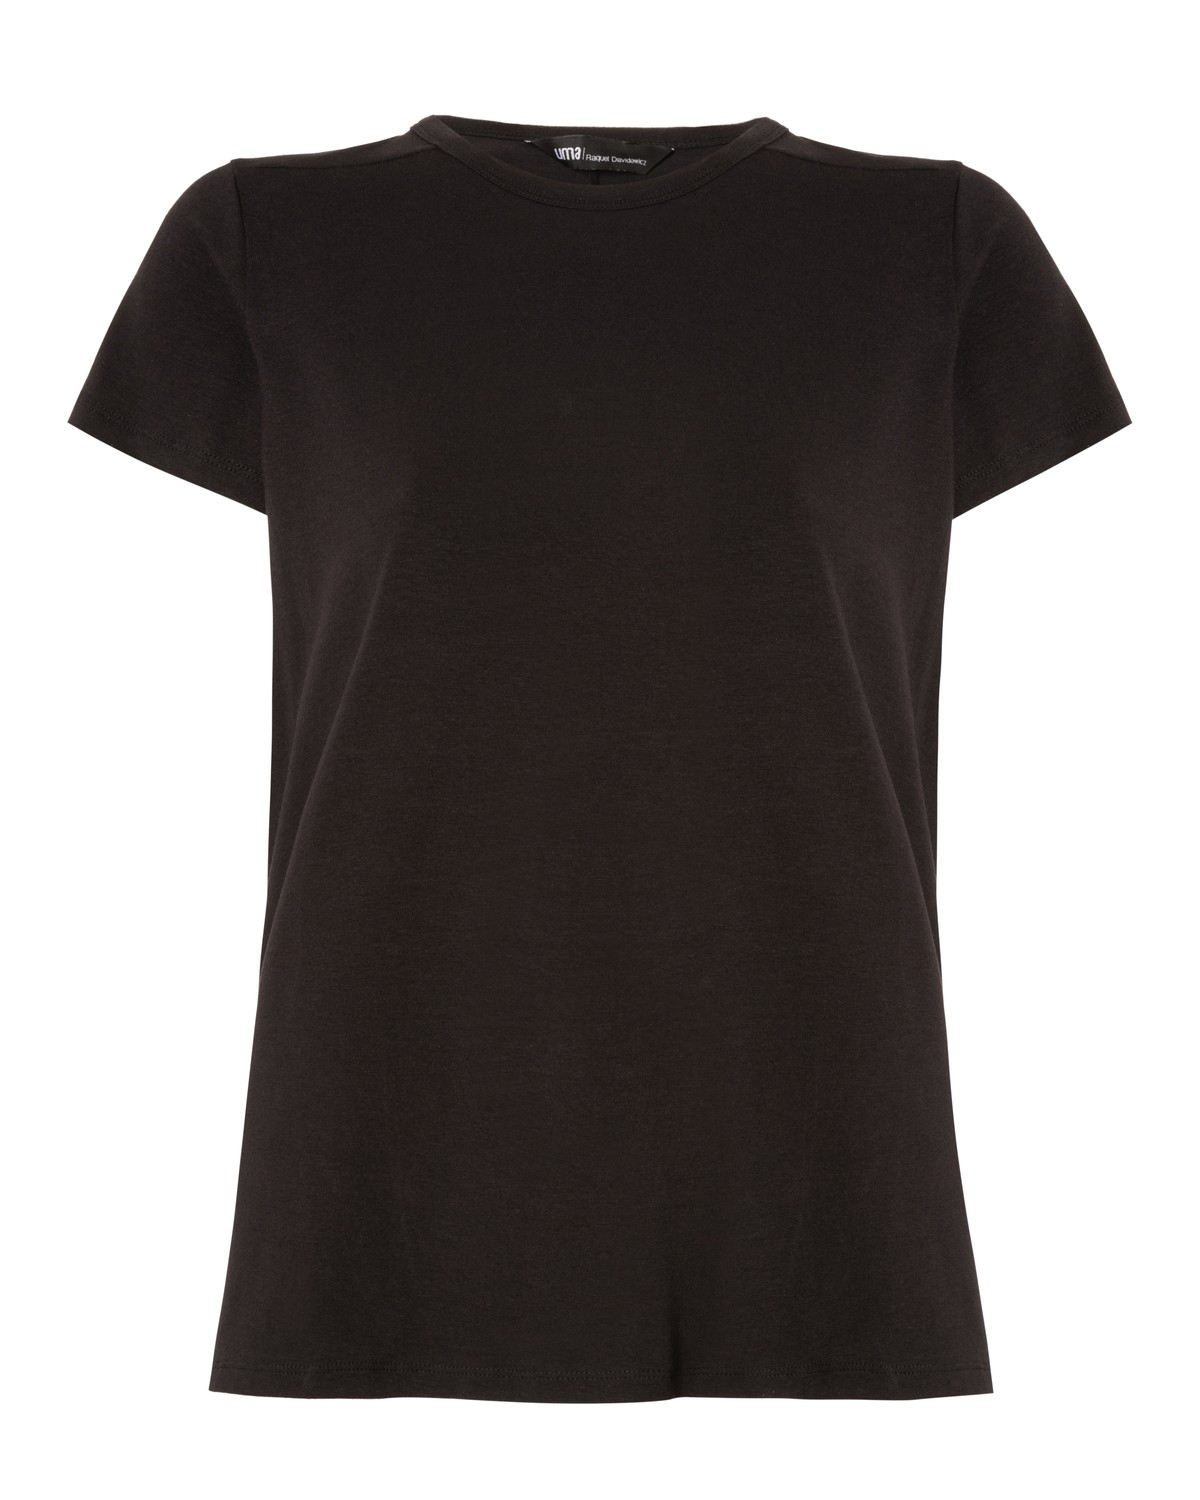 camiseta em algodão e modal | cotton modal jersey t-shirt